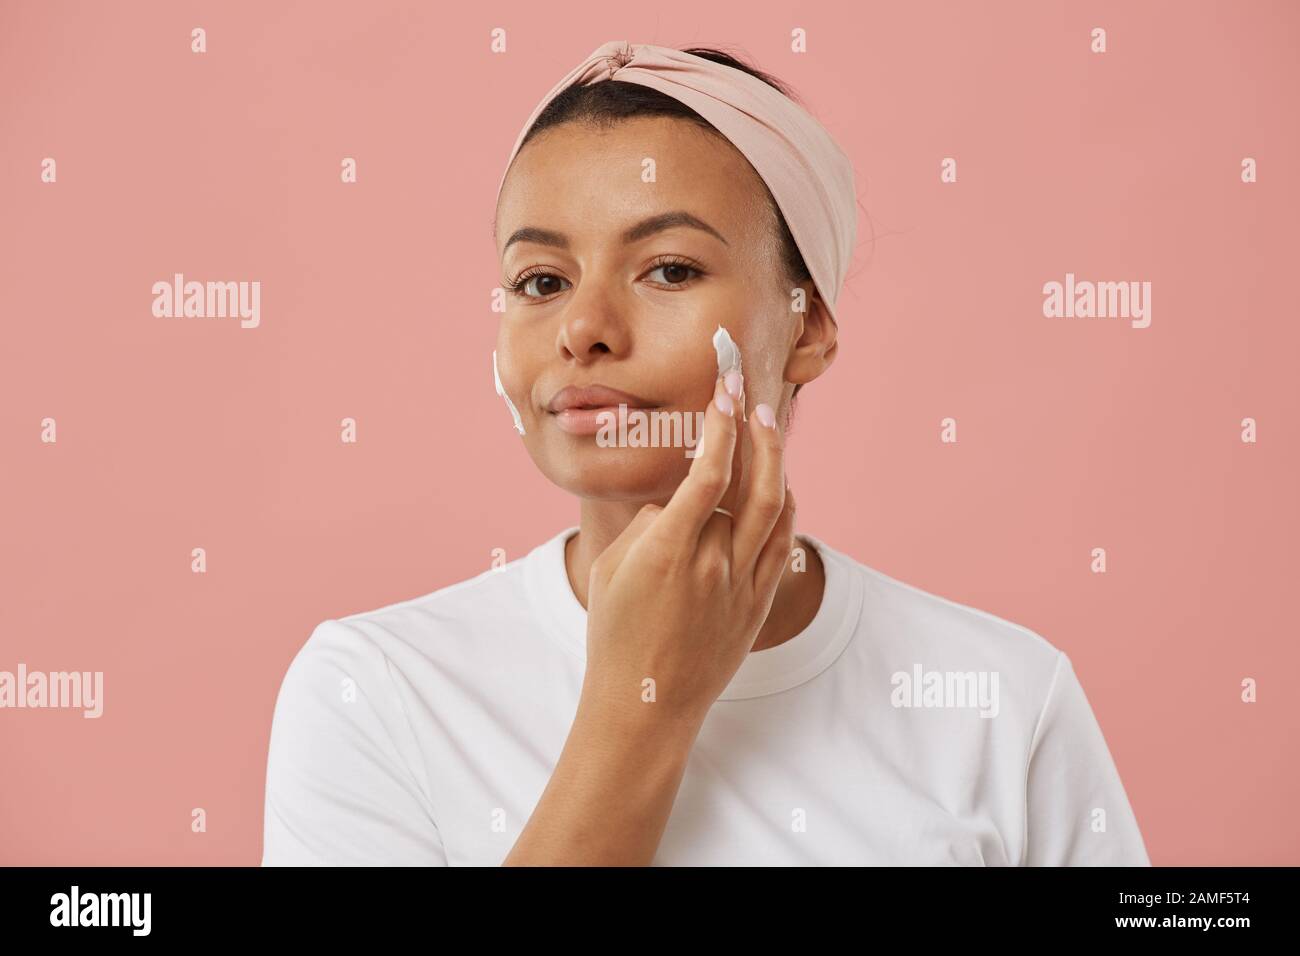 Porträt der schönen jungen Frau, die Gesichtscreme aufbringt und die Kamera betrachtet, während sie morgens bei der Schönheitsroutine vor rosafarbenem Hintergrund posiert Stockfoto